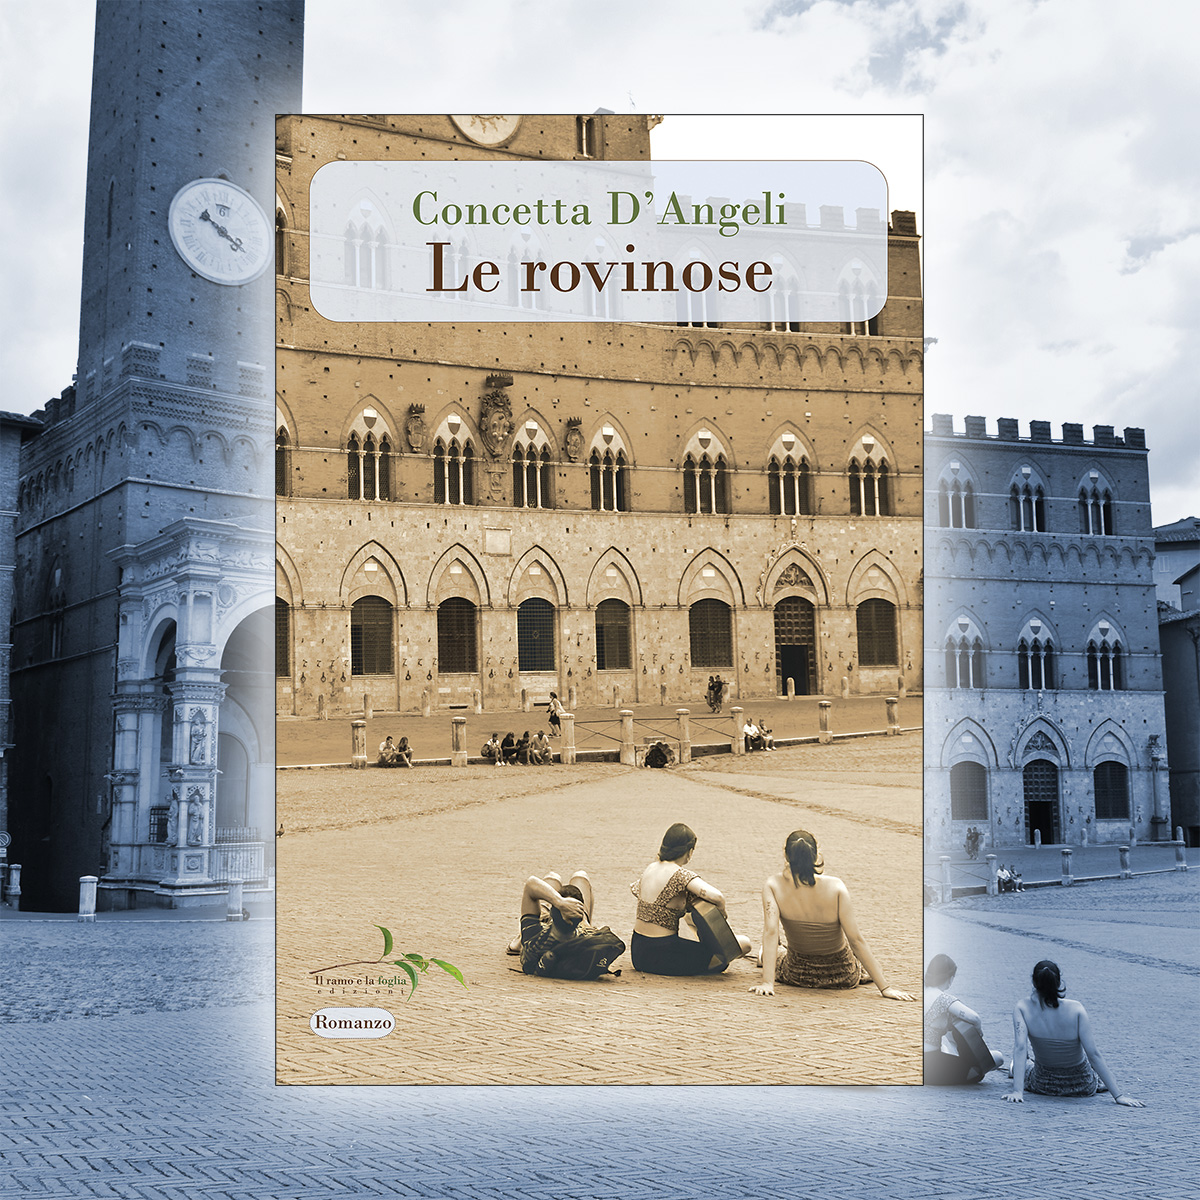 Copertina di “Le rovinose”: Piazza del Campo a Siena